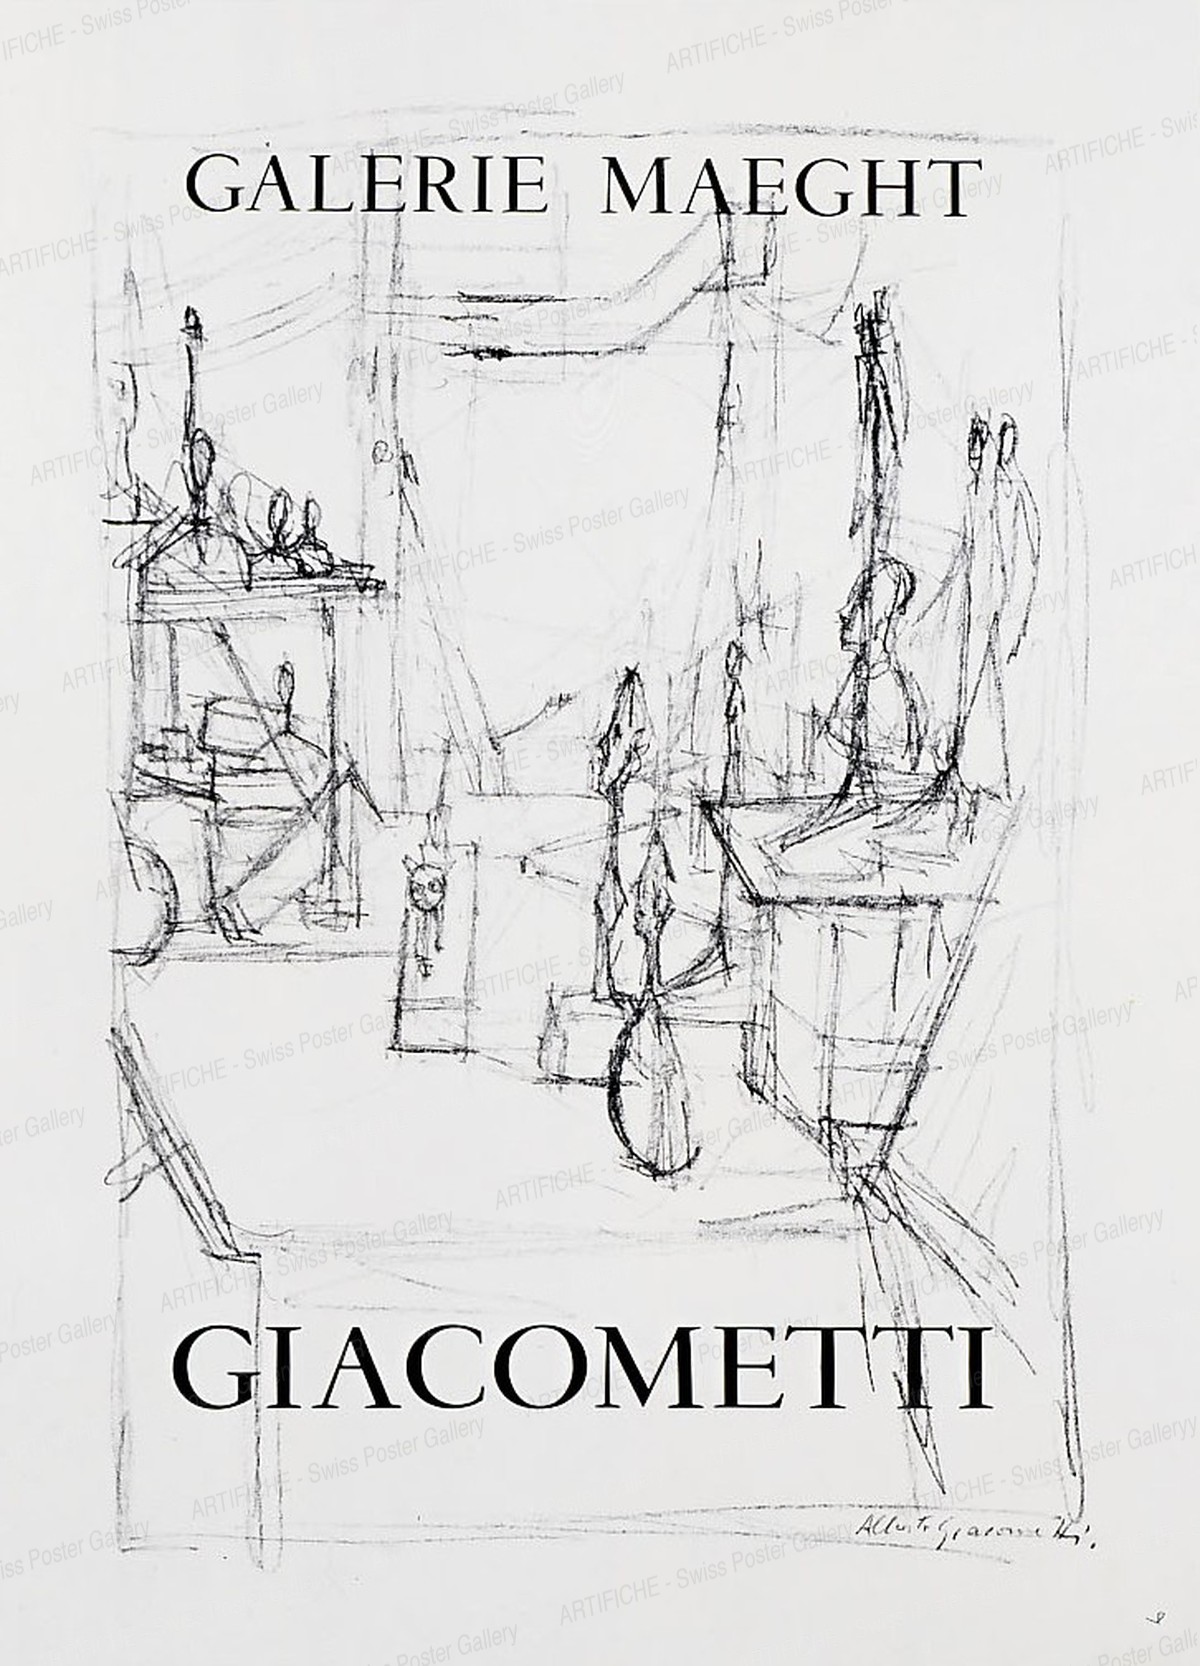 Galerie Maeght – Sculptures in the Studio – GIACOMETTI, Alberto Giacometti